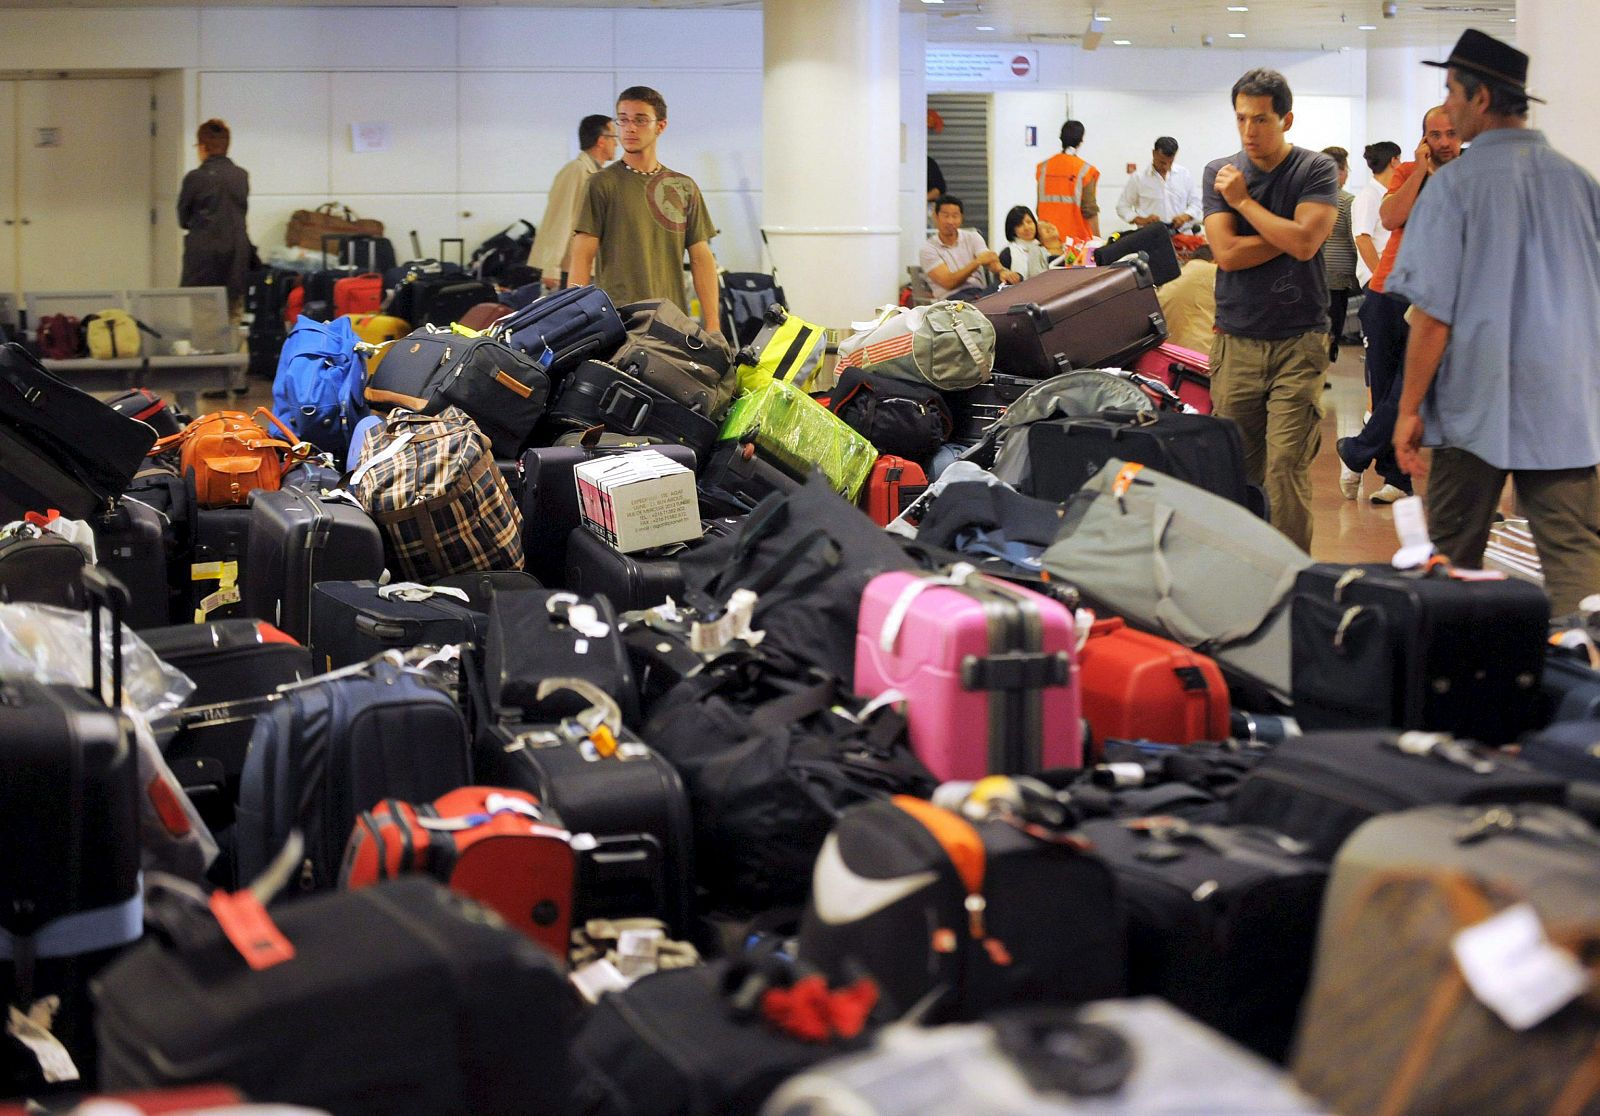 A pesar de que la huelga de los trabajadores encargados de los equipajes del aeropuerto de Bruselas ha finalizado, los pasajeros tienen problemas para poder viajar desde o hacia Bruselas.200 españoles esperan un vuelo para poder volver a casa en Brus